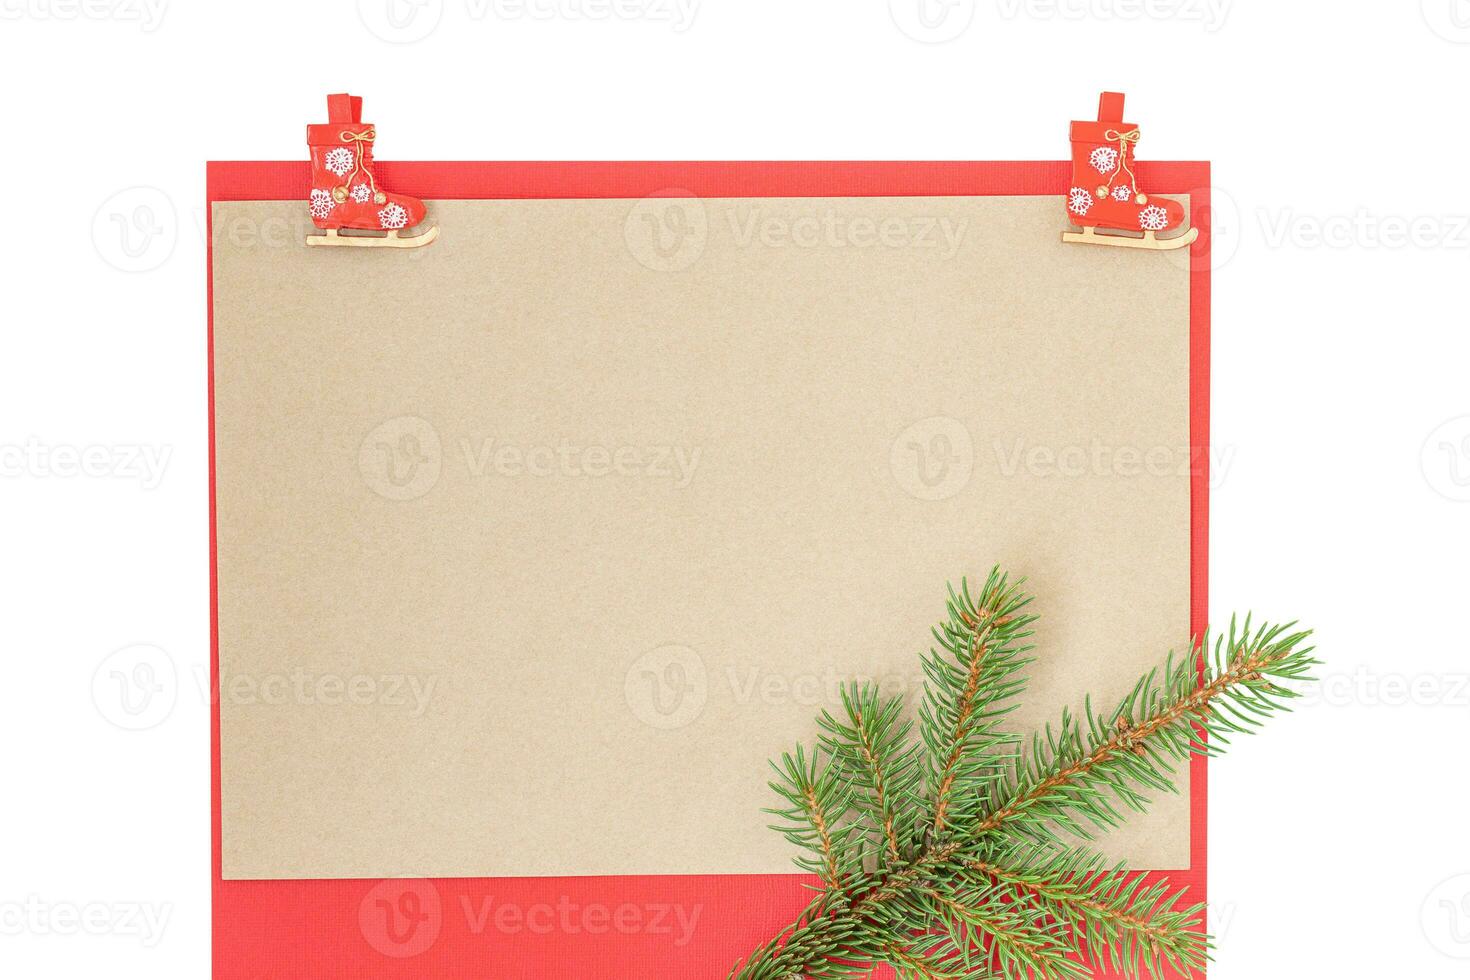 Noël motif avec papier, pinces à linge et brindille de épicéa photo